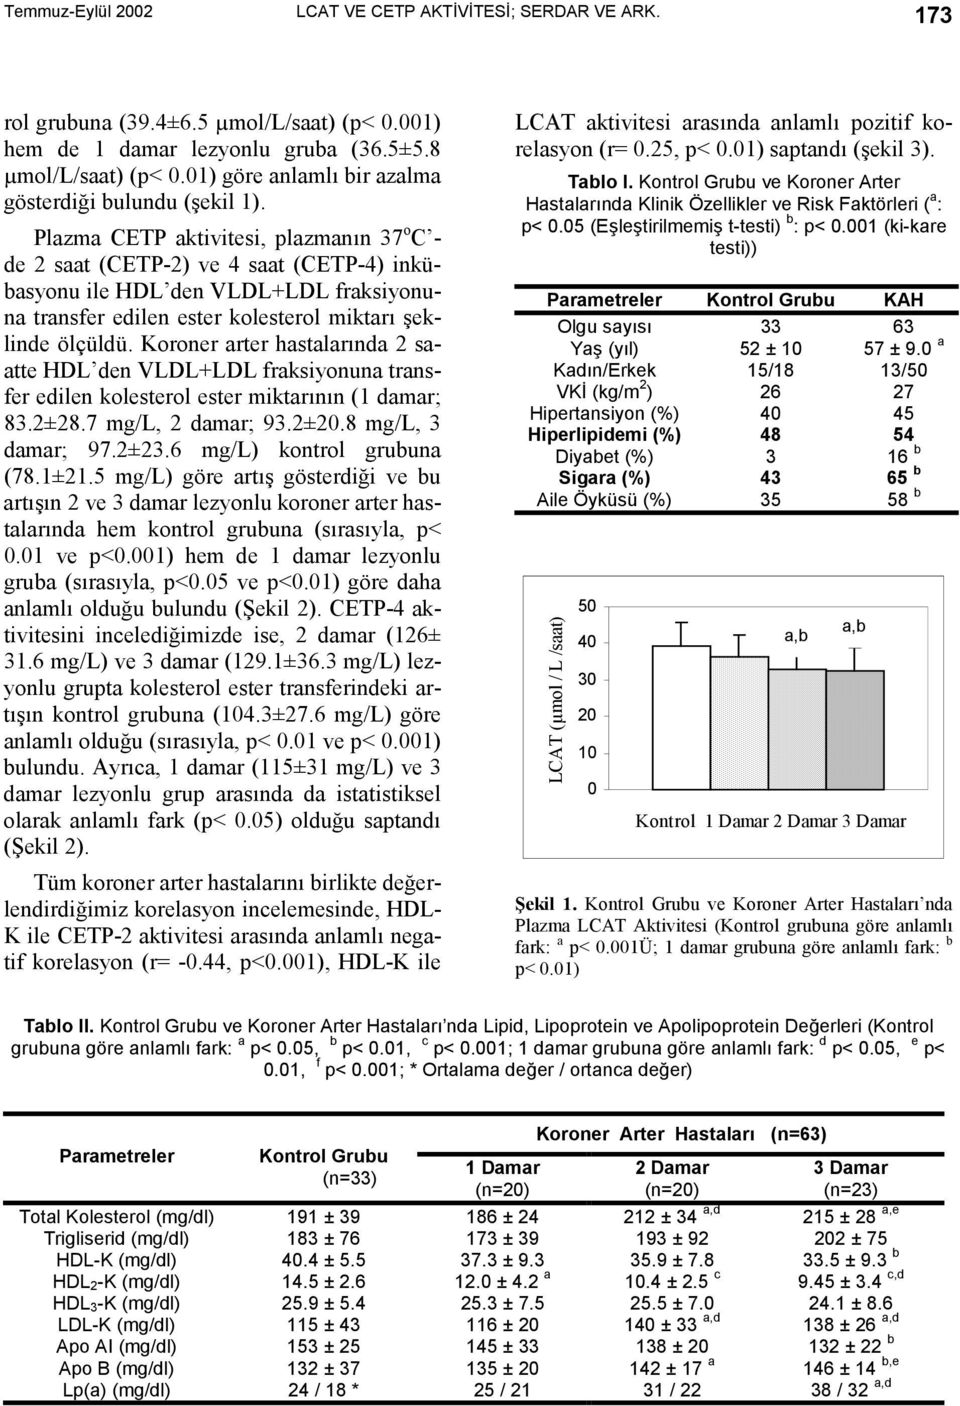 Plazma CETP aktivitesi, plazmanõn 37 o C - de 2 saat (CETP-2) ve 4 saat (CETP-4) inkübasyonu ile HDL den VLDL+LDL fraksiyonuna transfer edilen ester kolesterol miktarõ şeklinde ölçüldü.